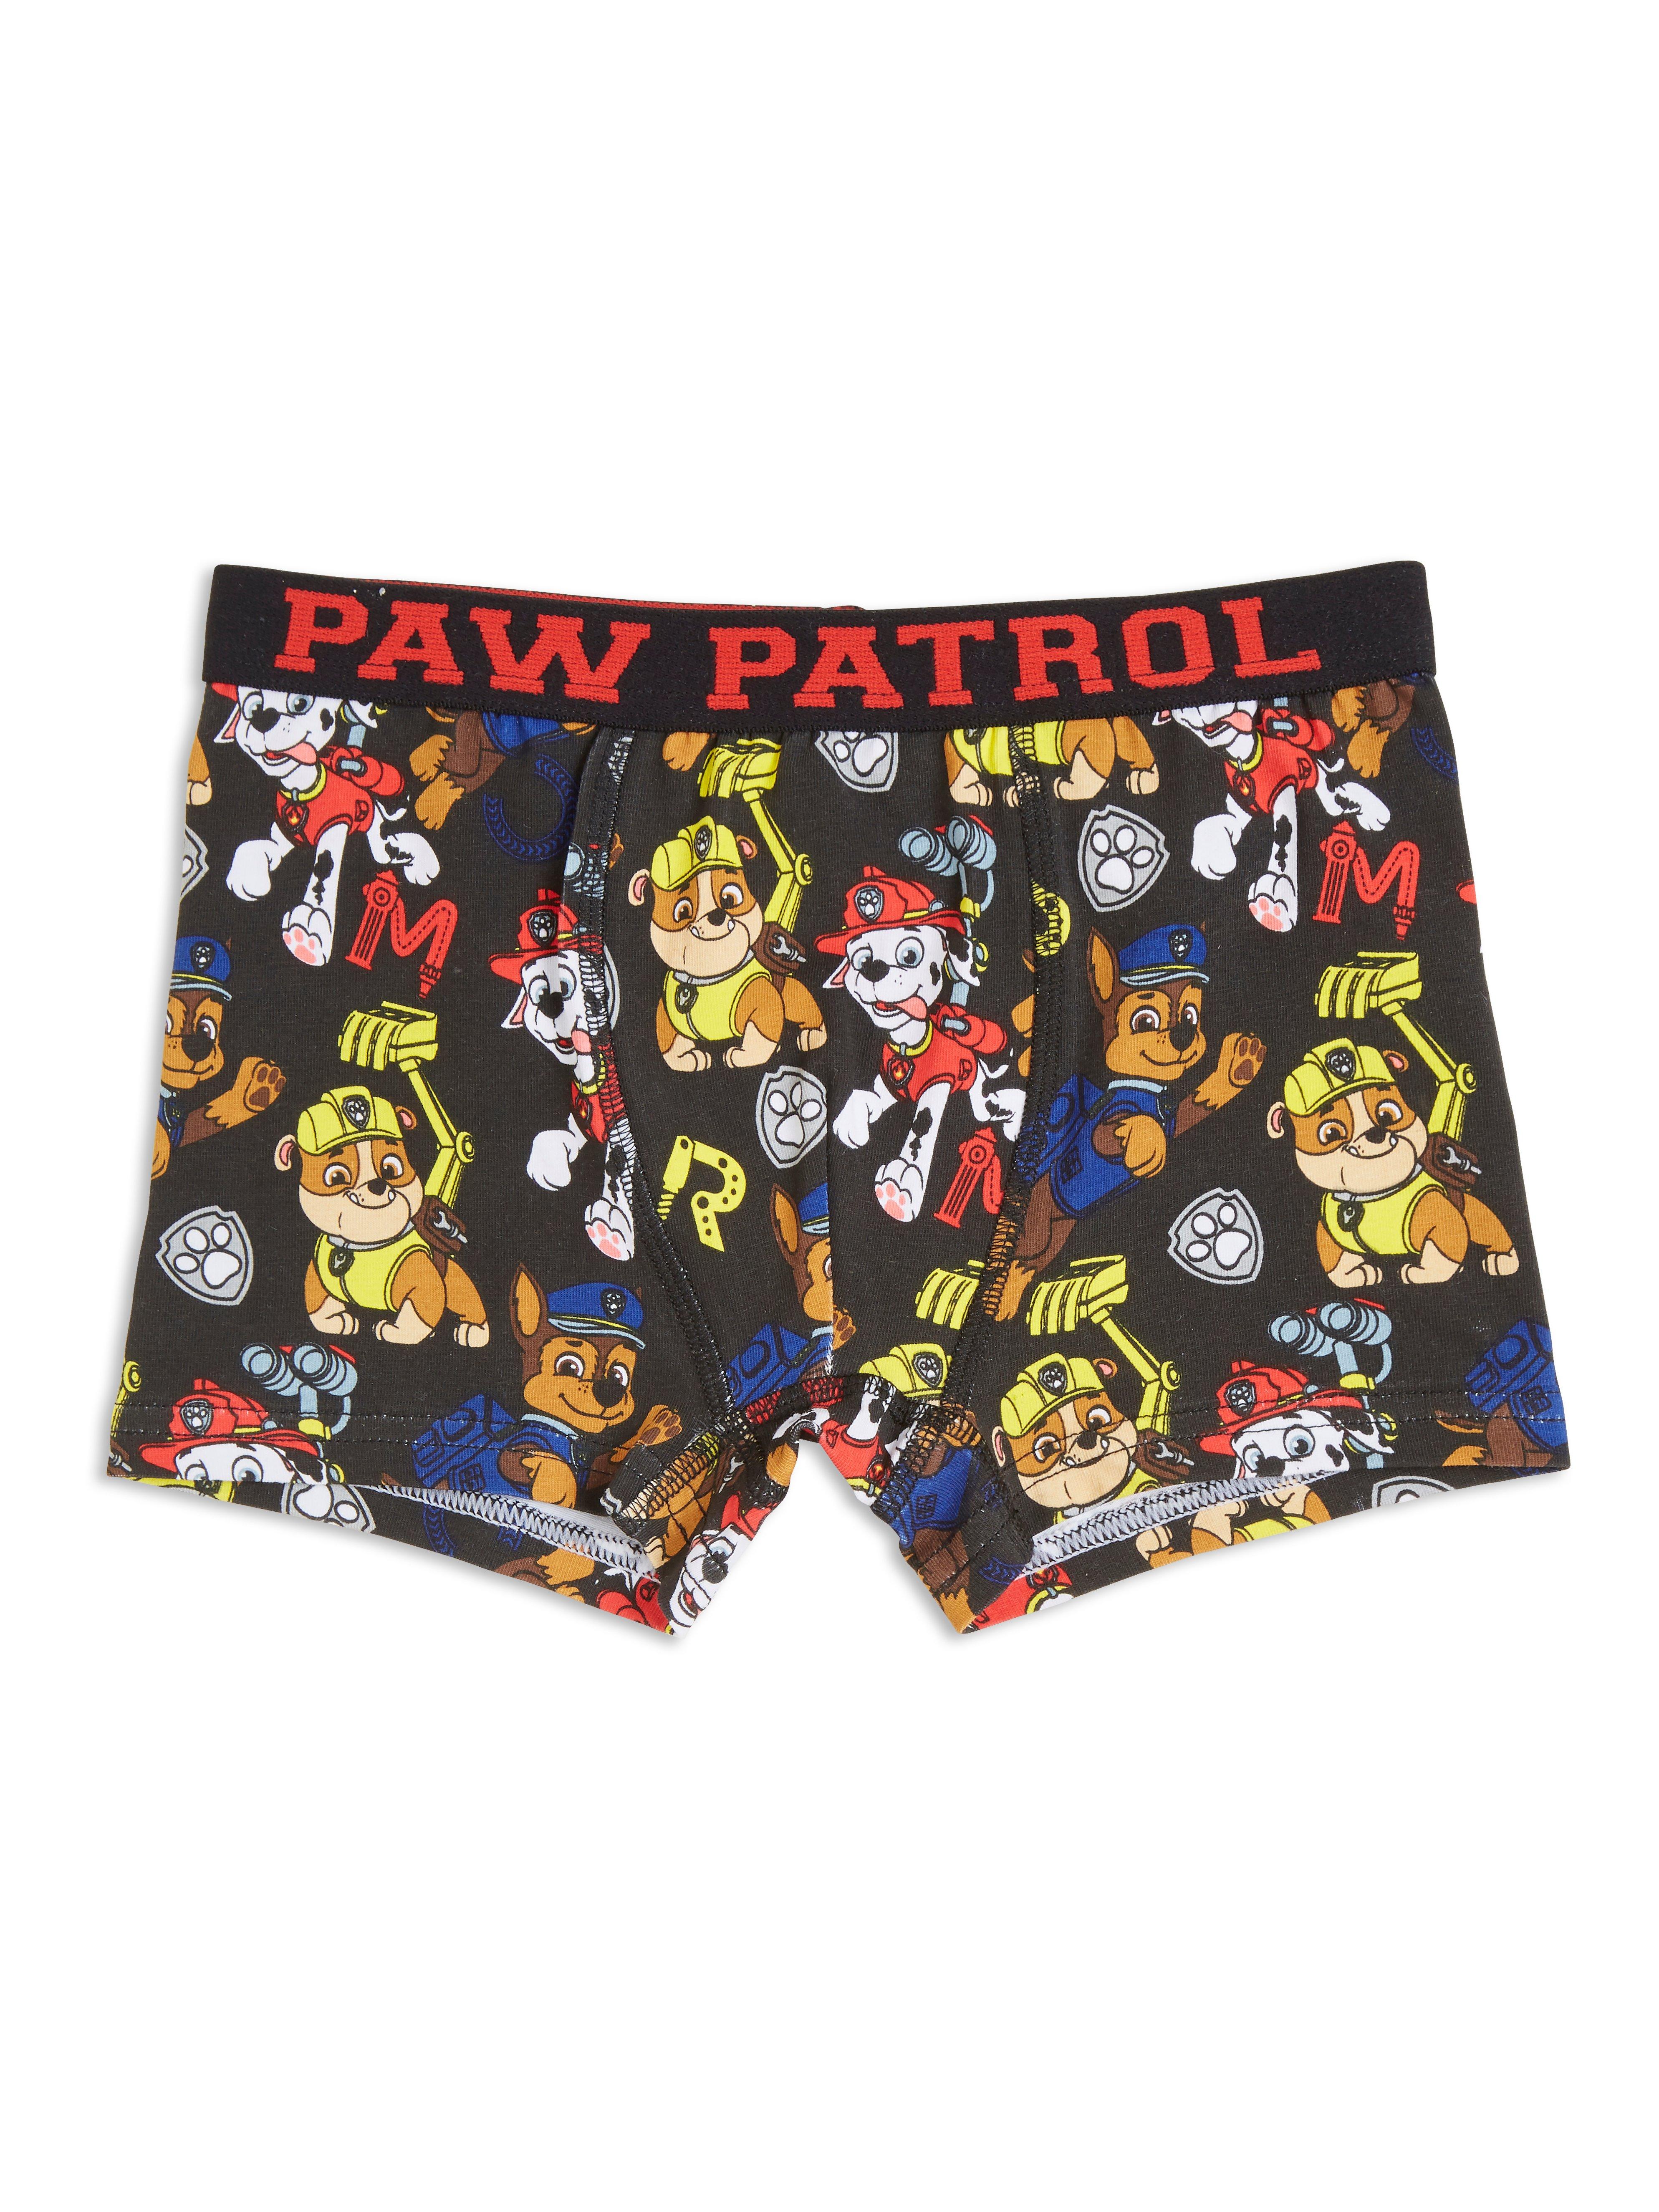 Paw Patrol Boxers -  UK